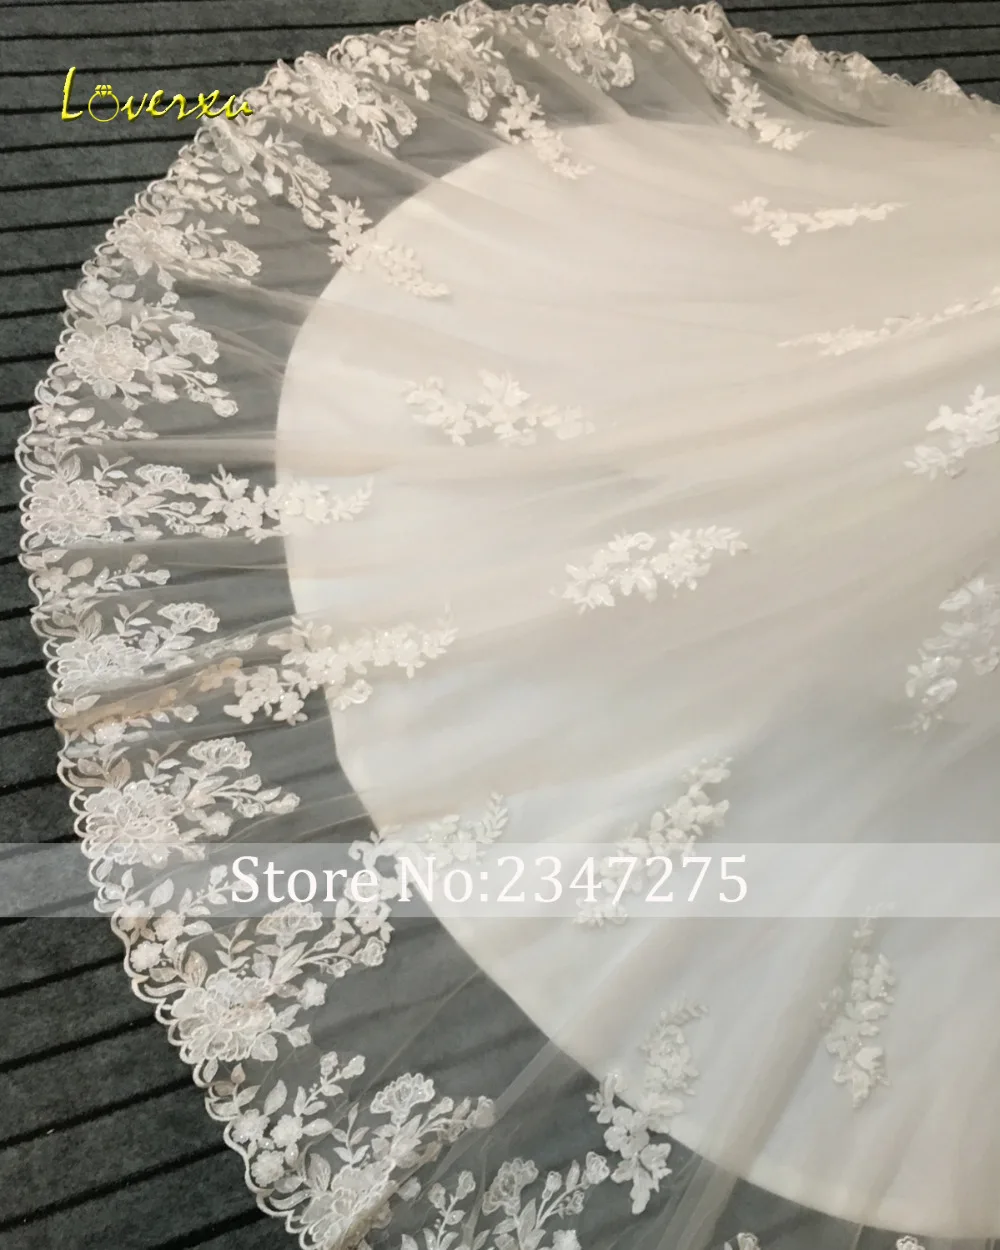 Loverxu Vestido De Noiva пикантное романтичное кружевное Русалка Свадебные платья Аппликации Бисер Часовня свадебное платье с длинным подолом плюс размеры